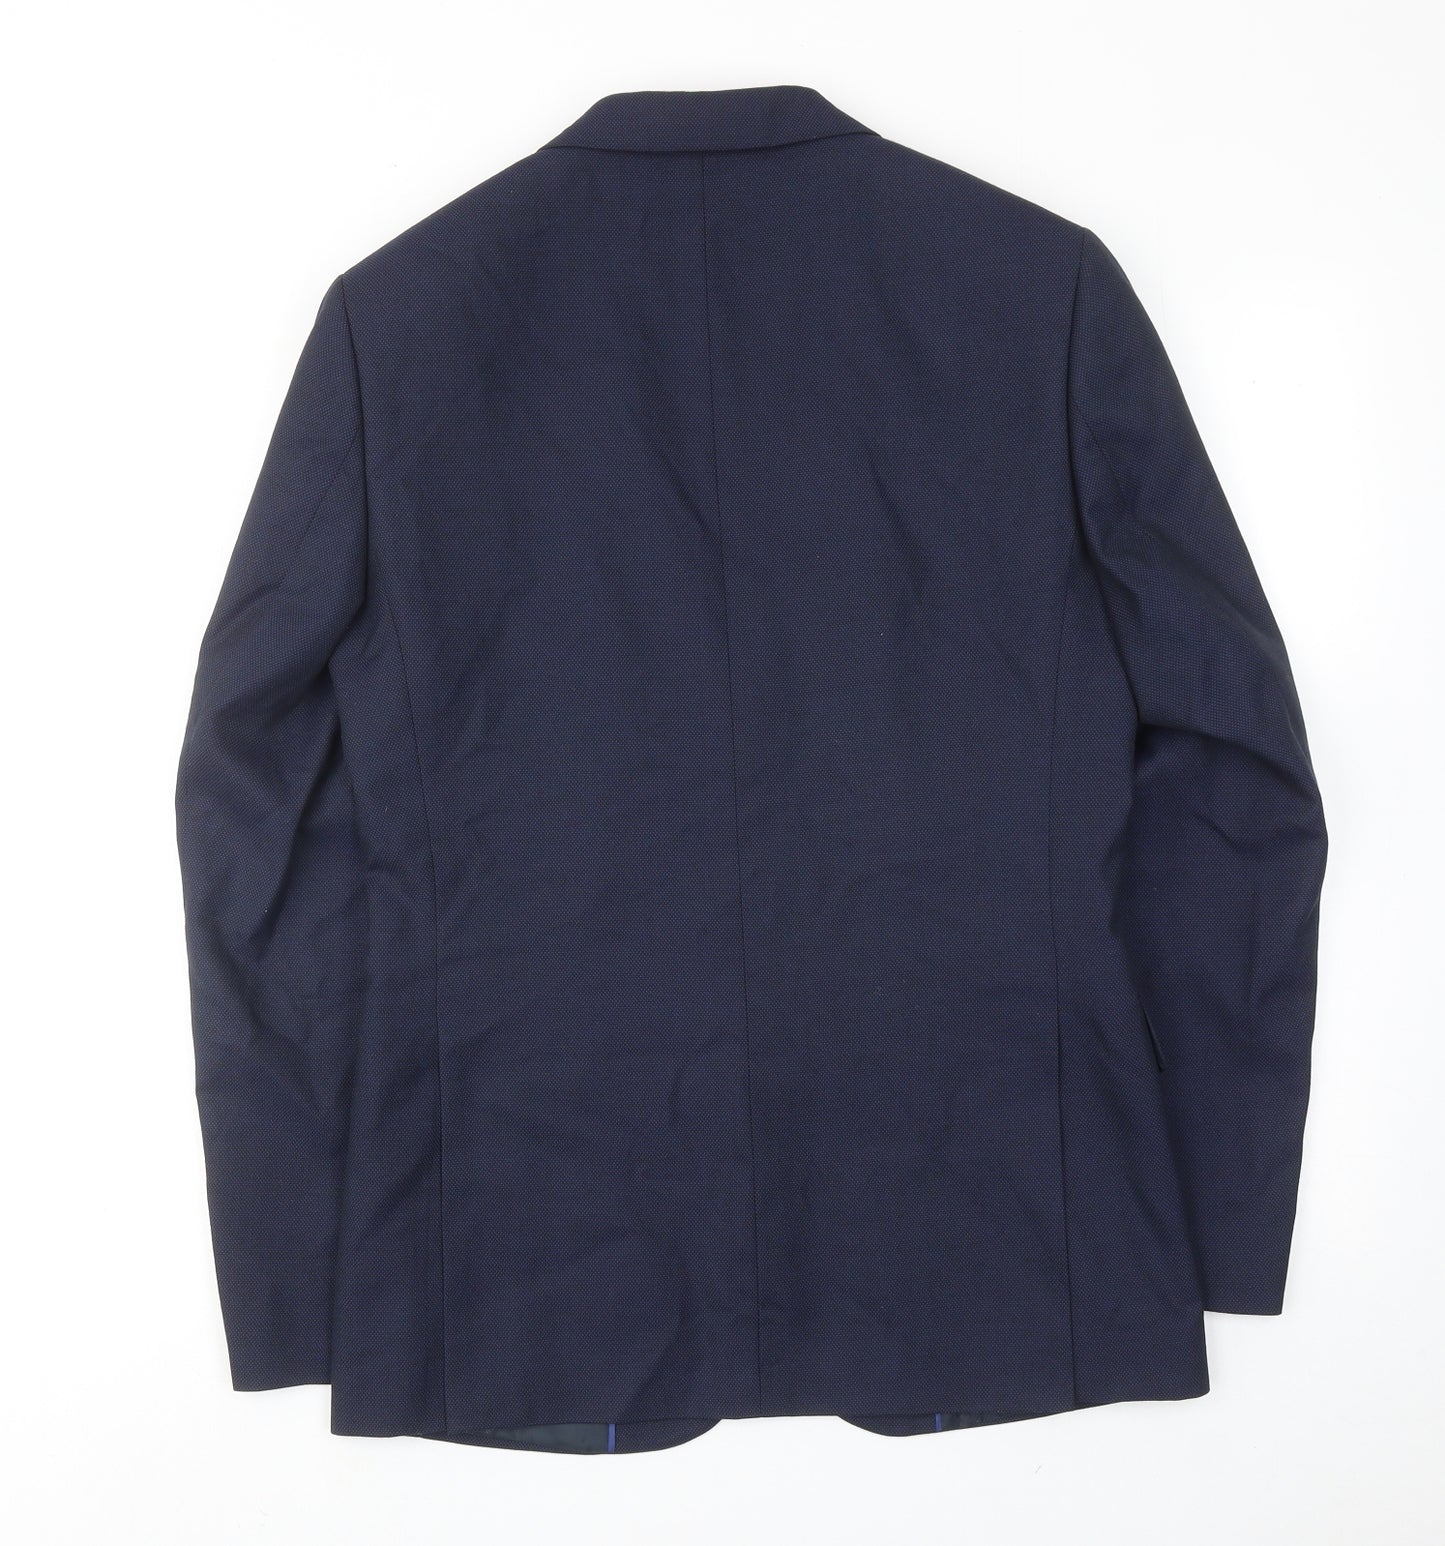 Marks and Spencer Mens Blue Polyester Jacket Suit Jacket Size 36 Regular